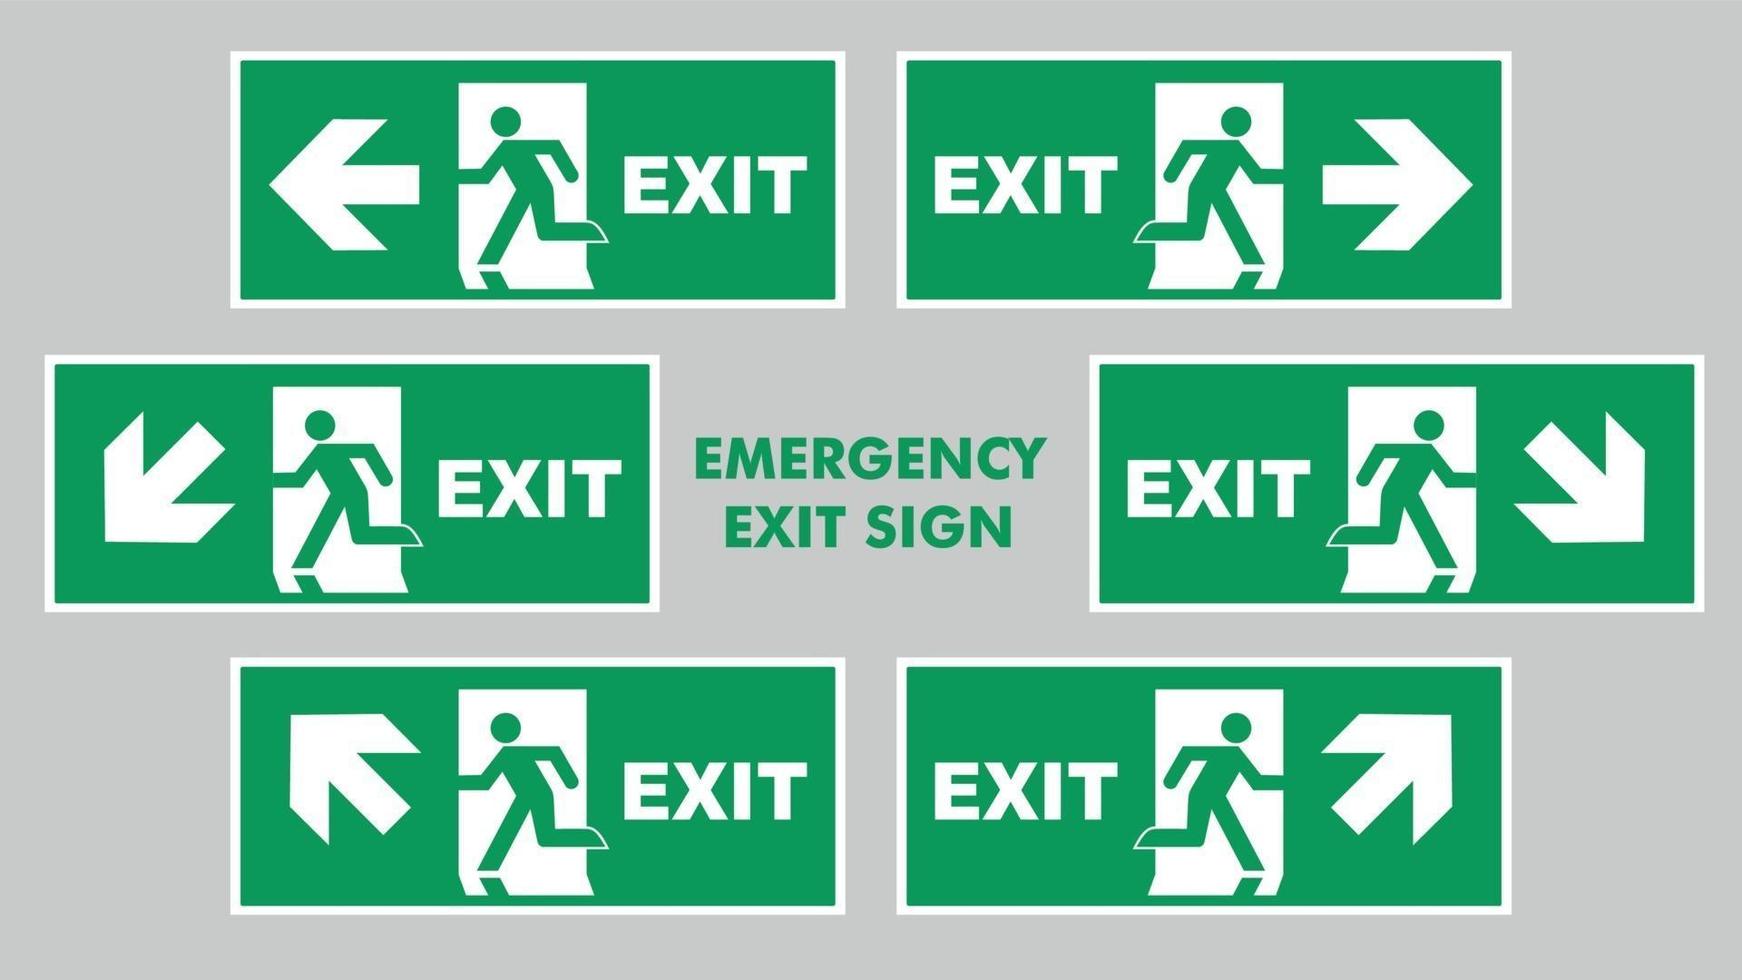 instruções de evacuação de emergência dentro do edifício. sinal de segurança saída de emergência vetor